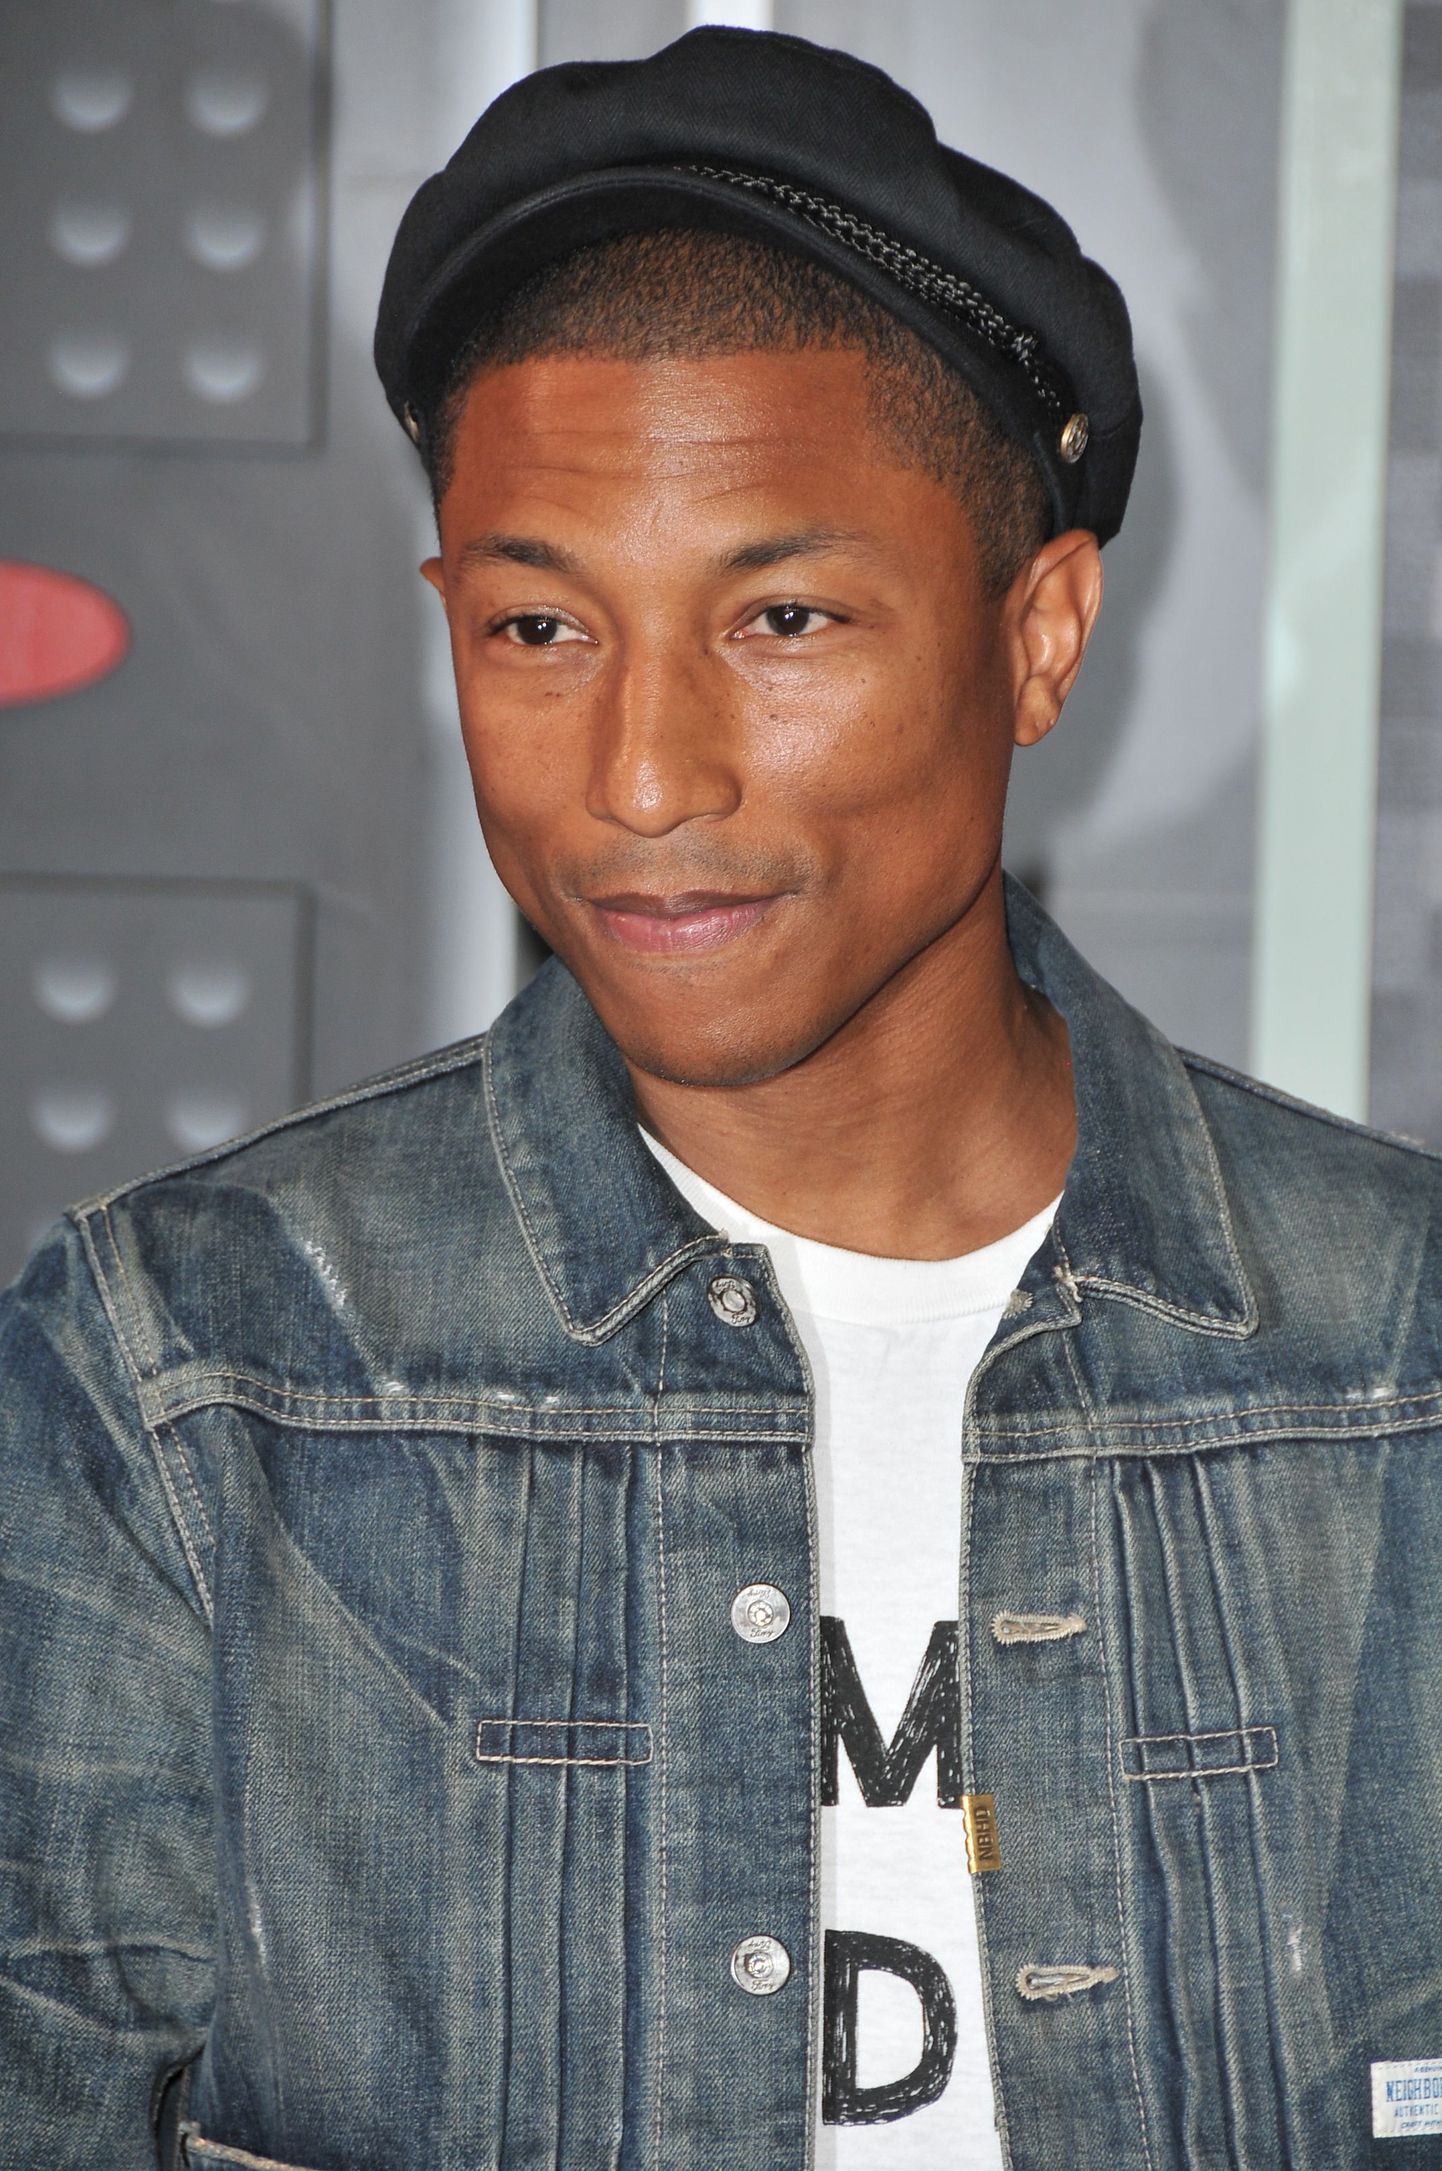 Laulja Pharrell Williams on sünesteet.